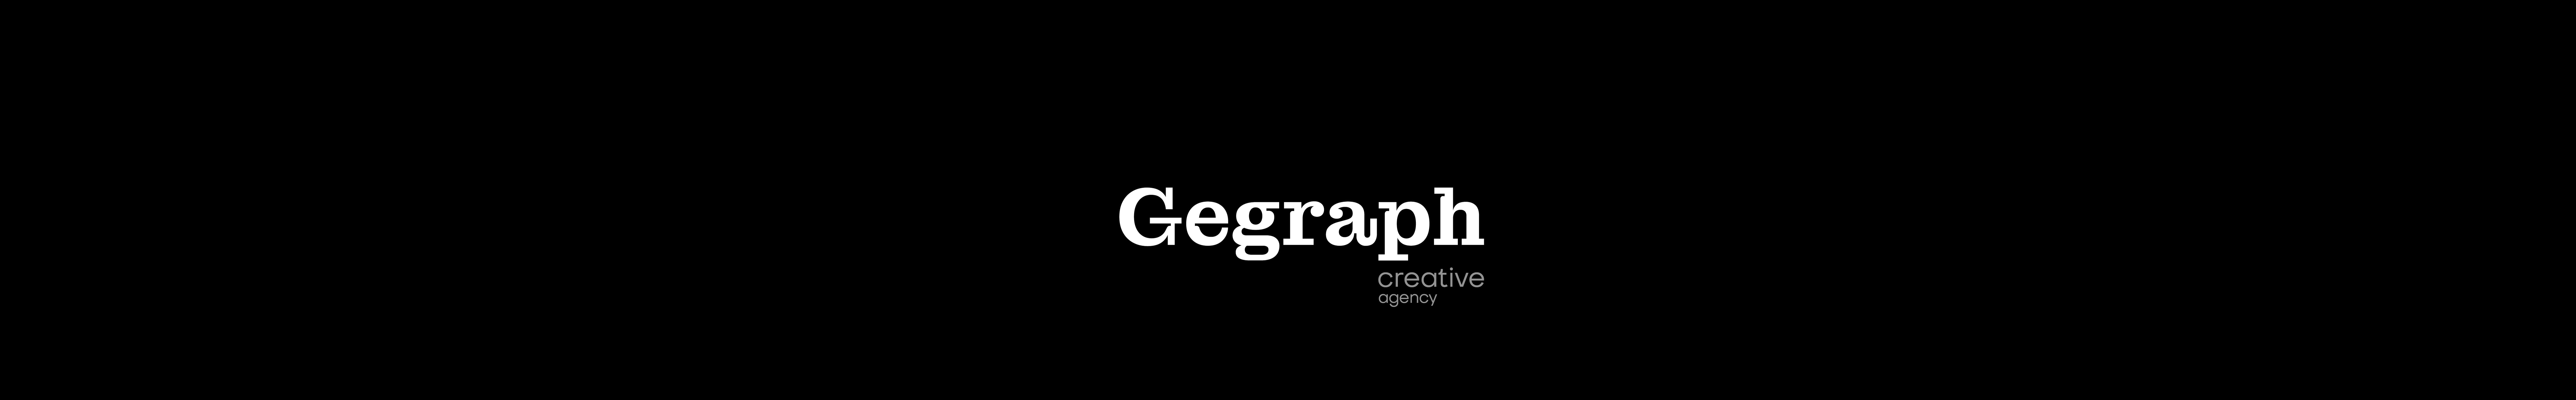 GEGRAPH agency のプロファイルバナー